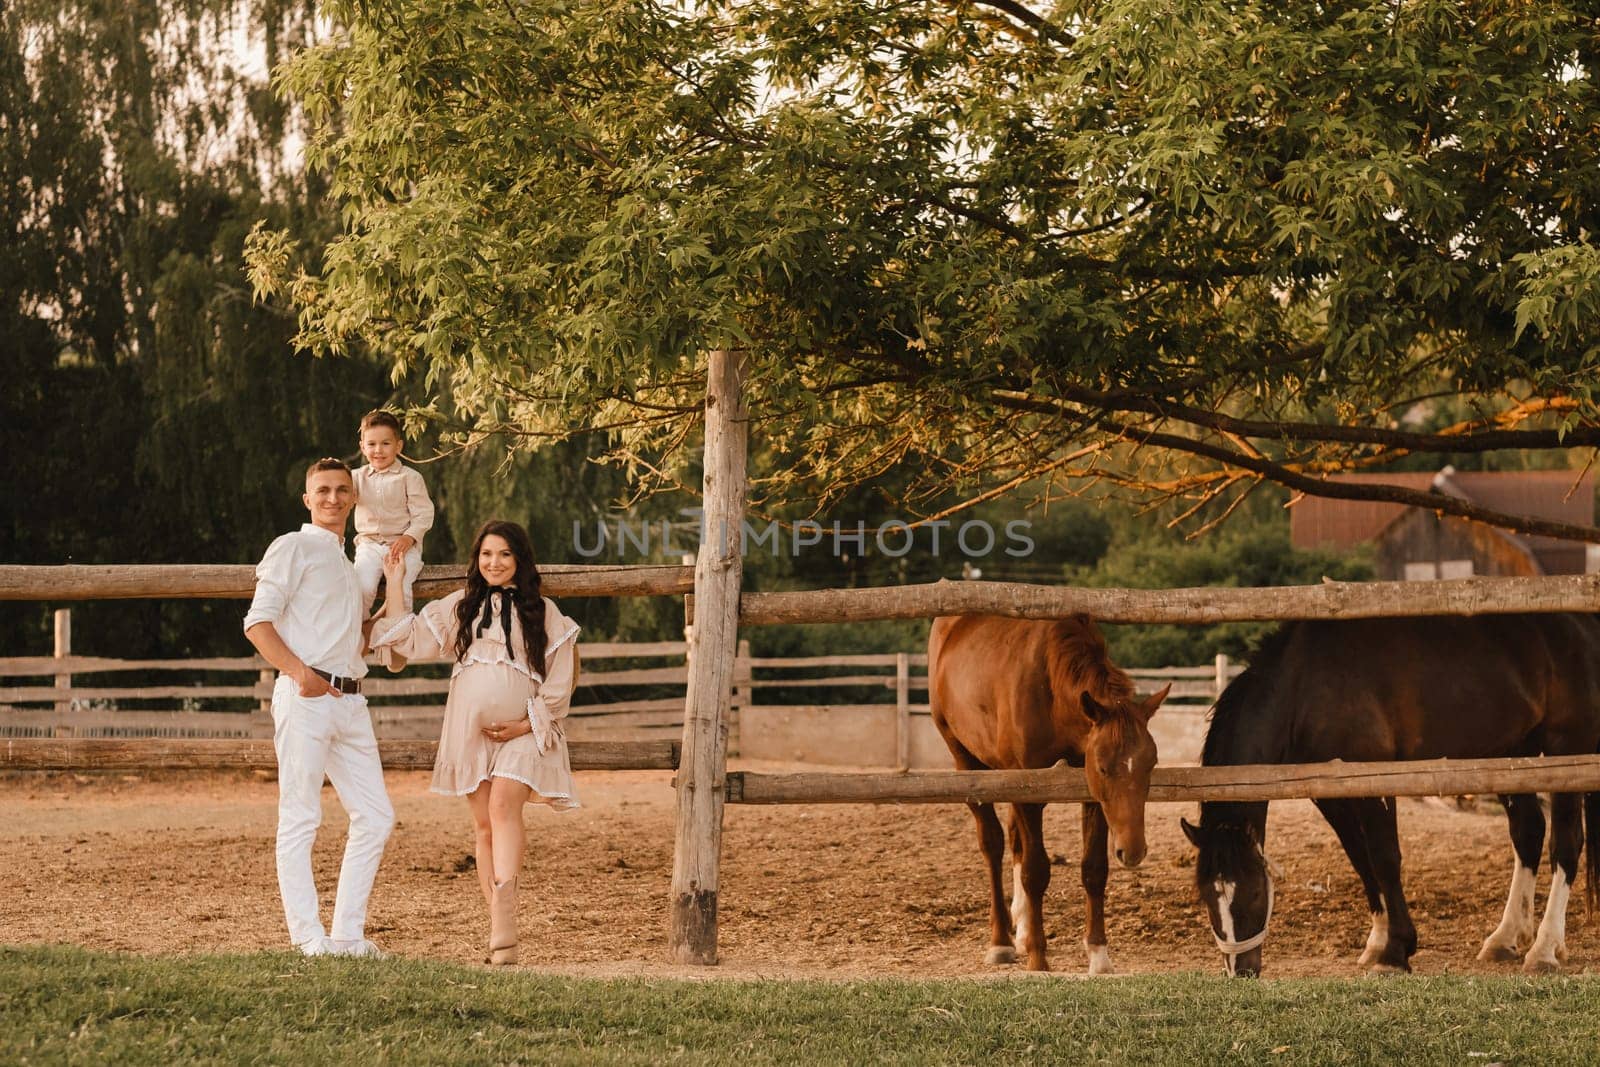 Happy family near horses at a farmer's ranch at sunset.